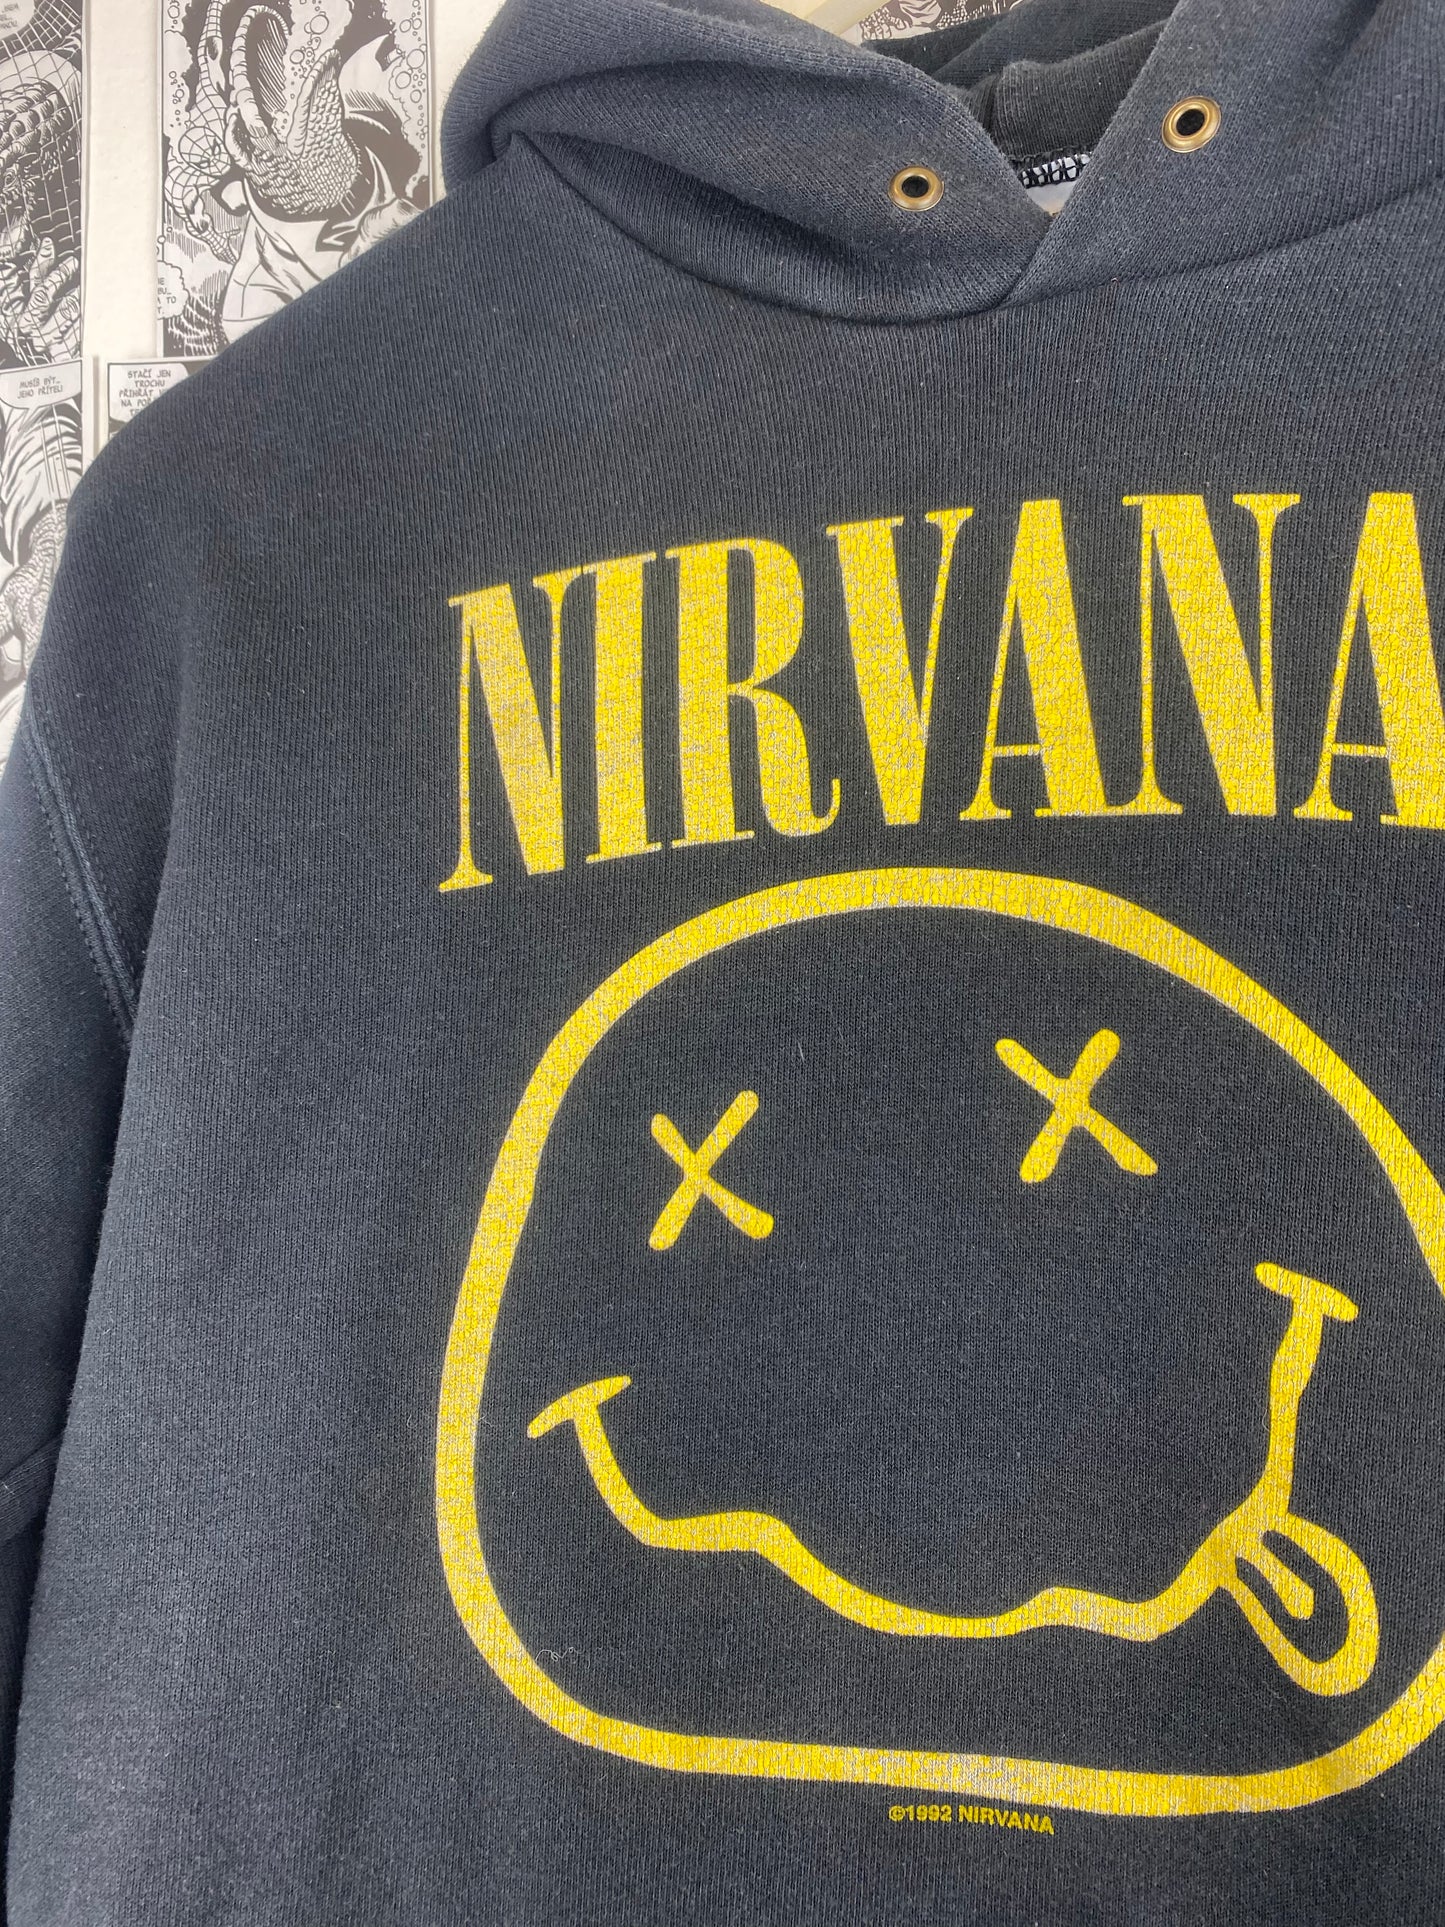 Vintage Nirvana Smiley 00s hoodie - size S